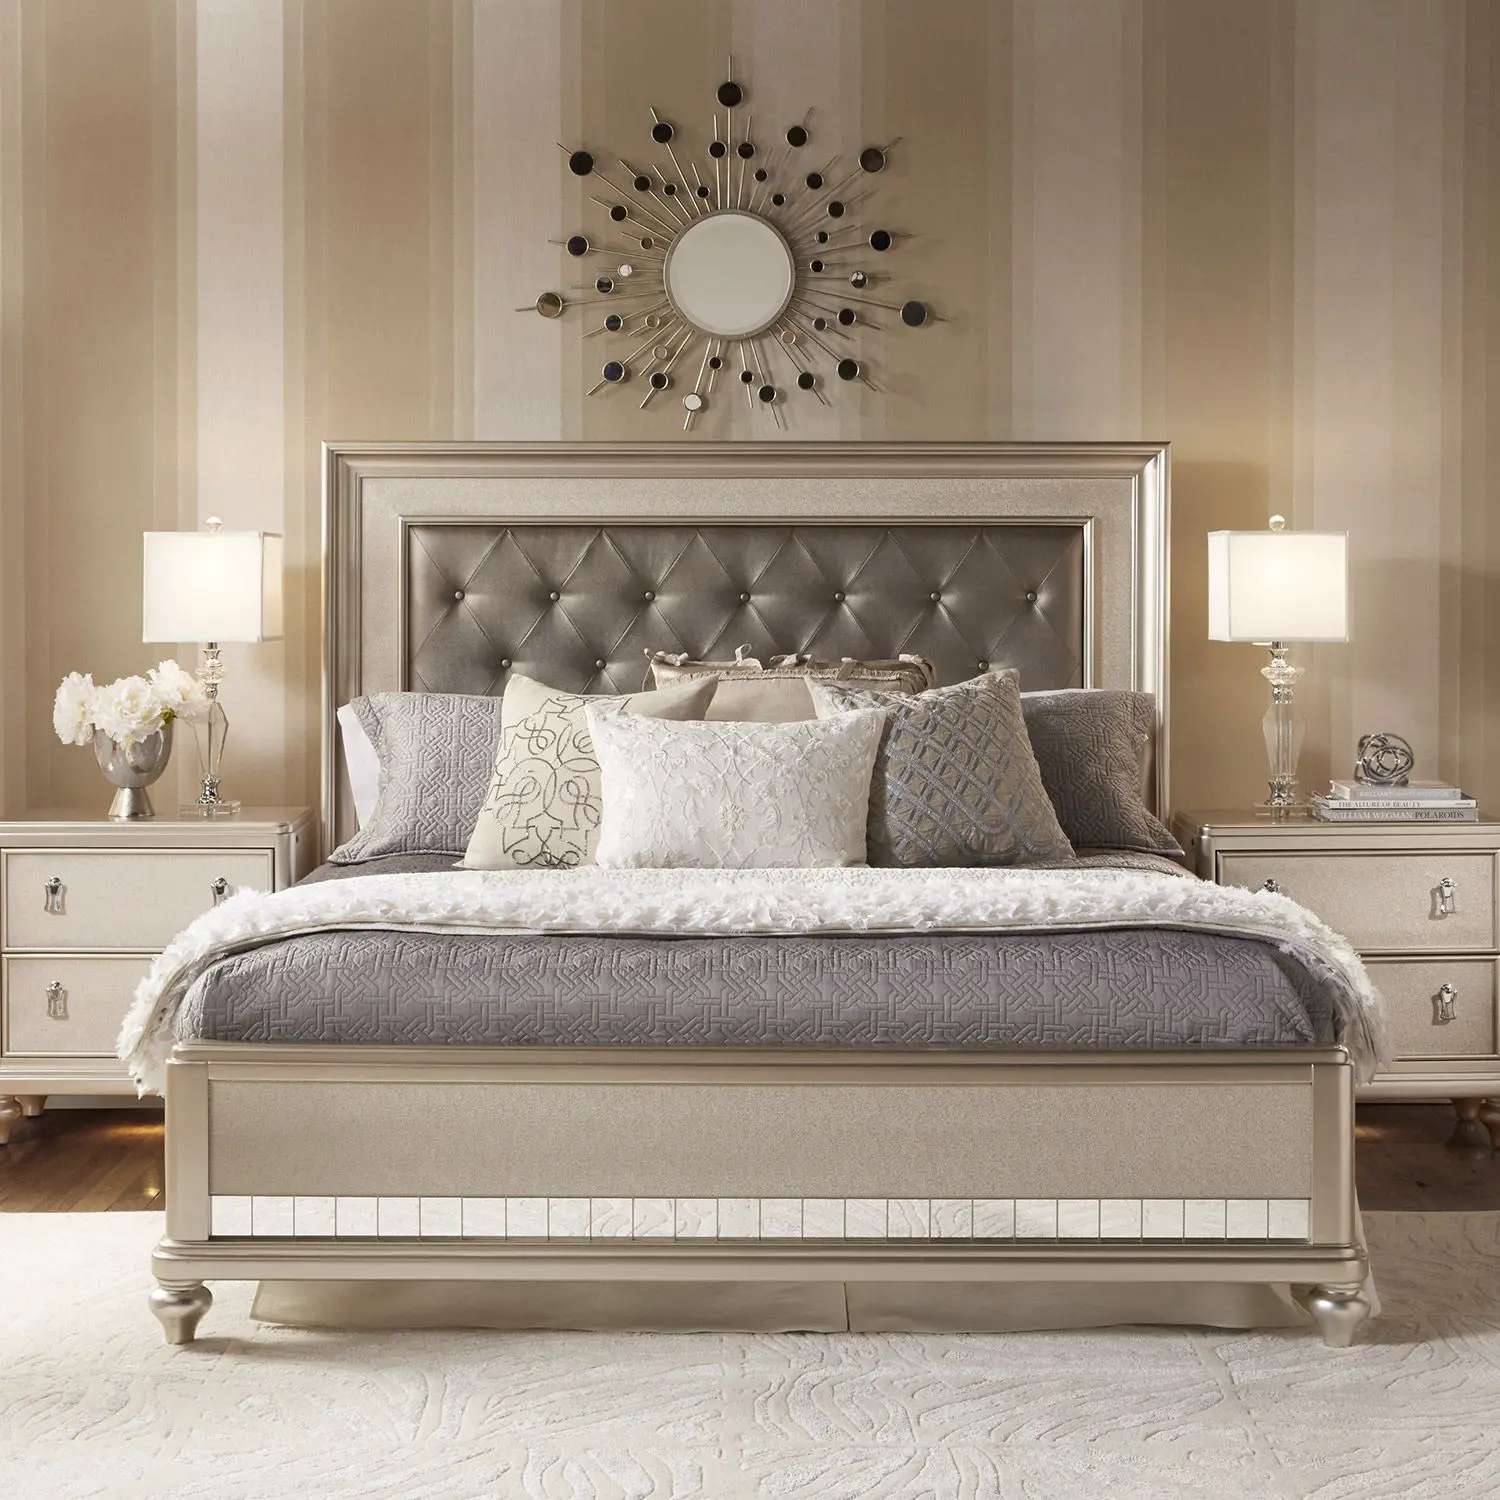 Queen Bed Pillow Arrangements